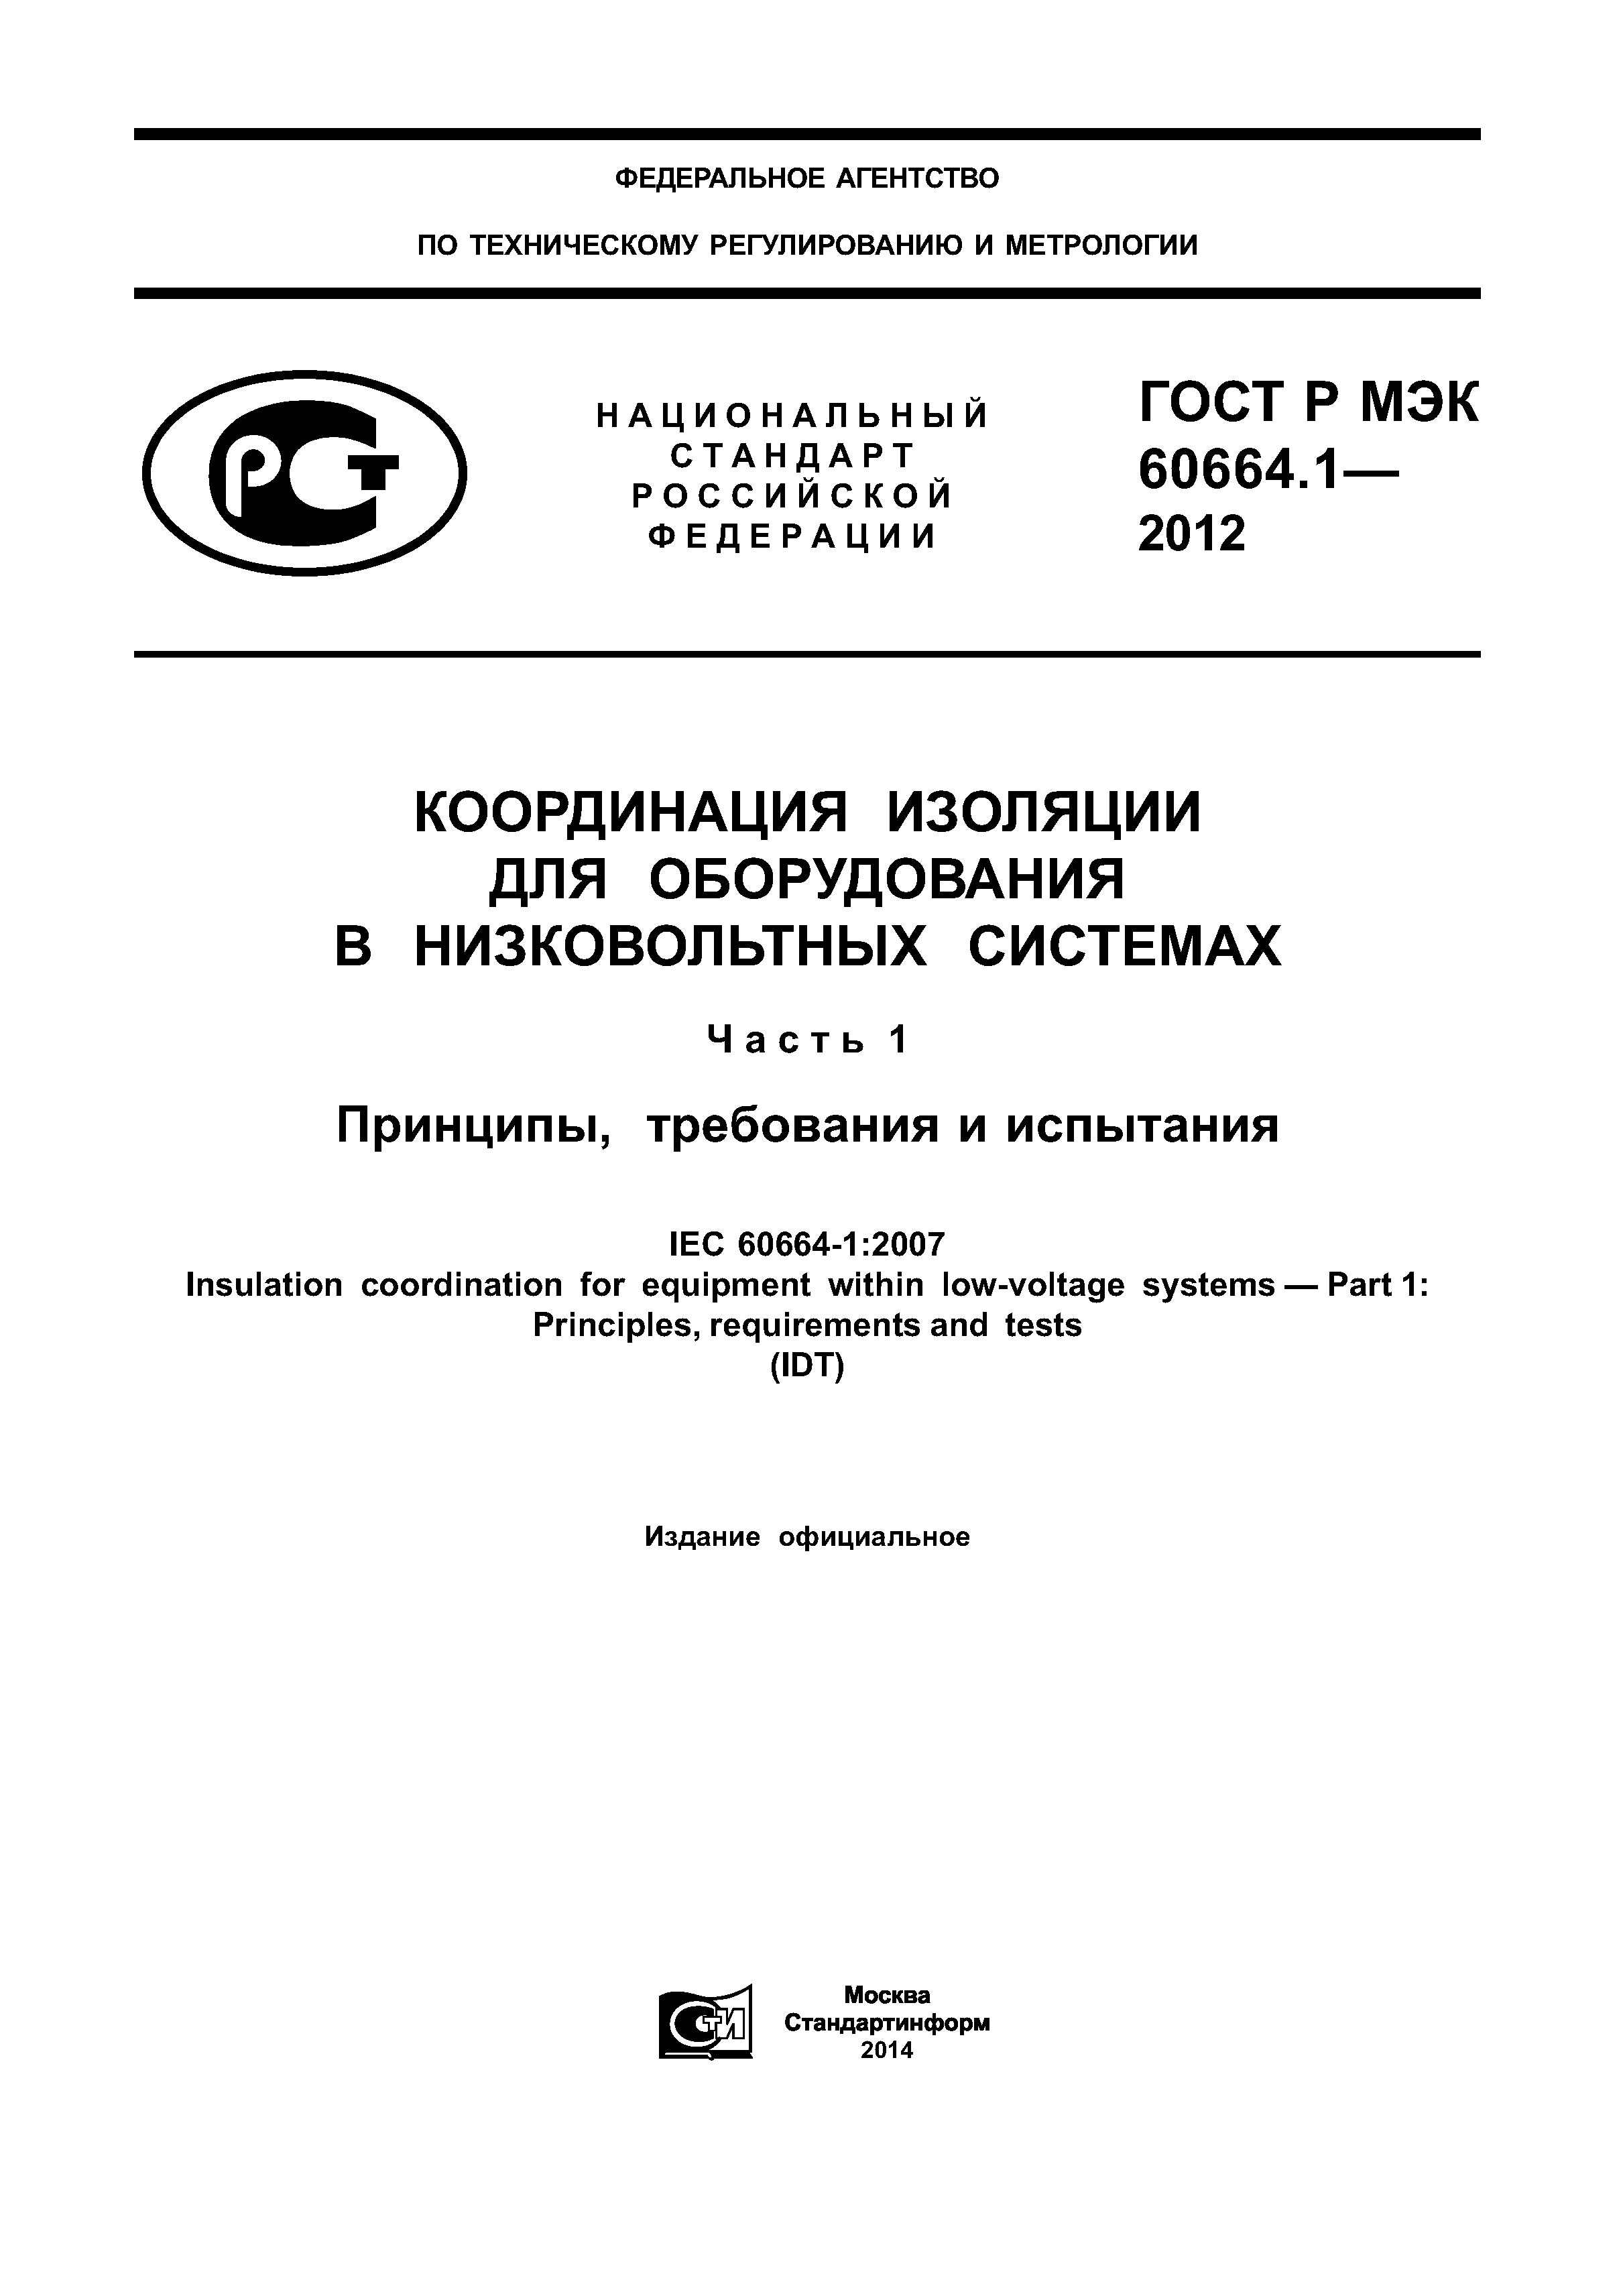 ГОСТ Р МЭК 60664.1-2012